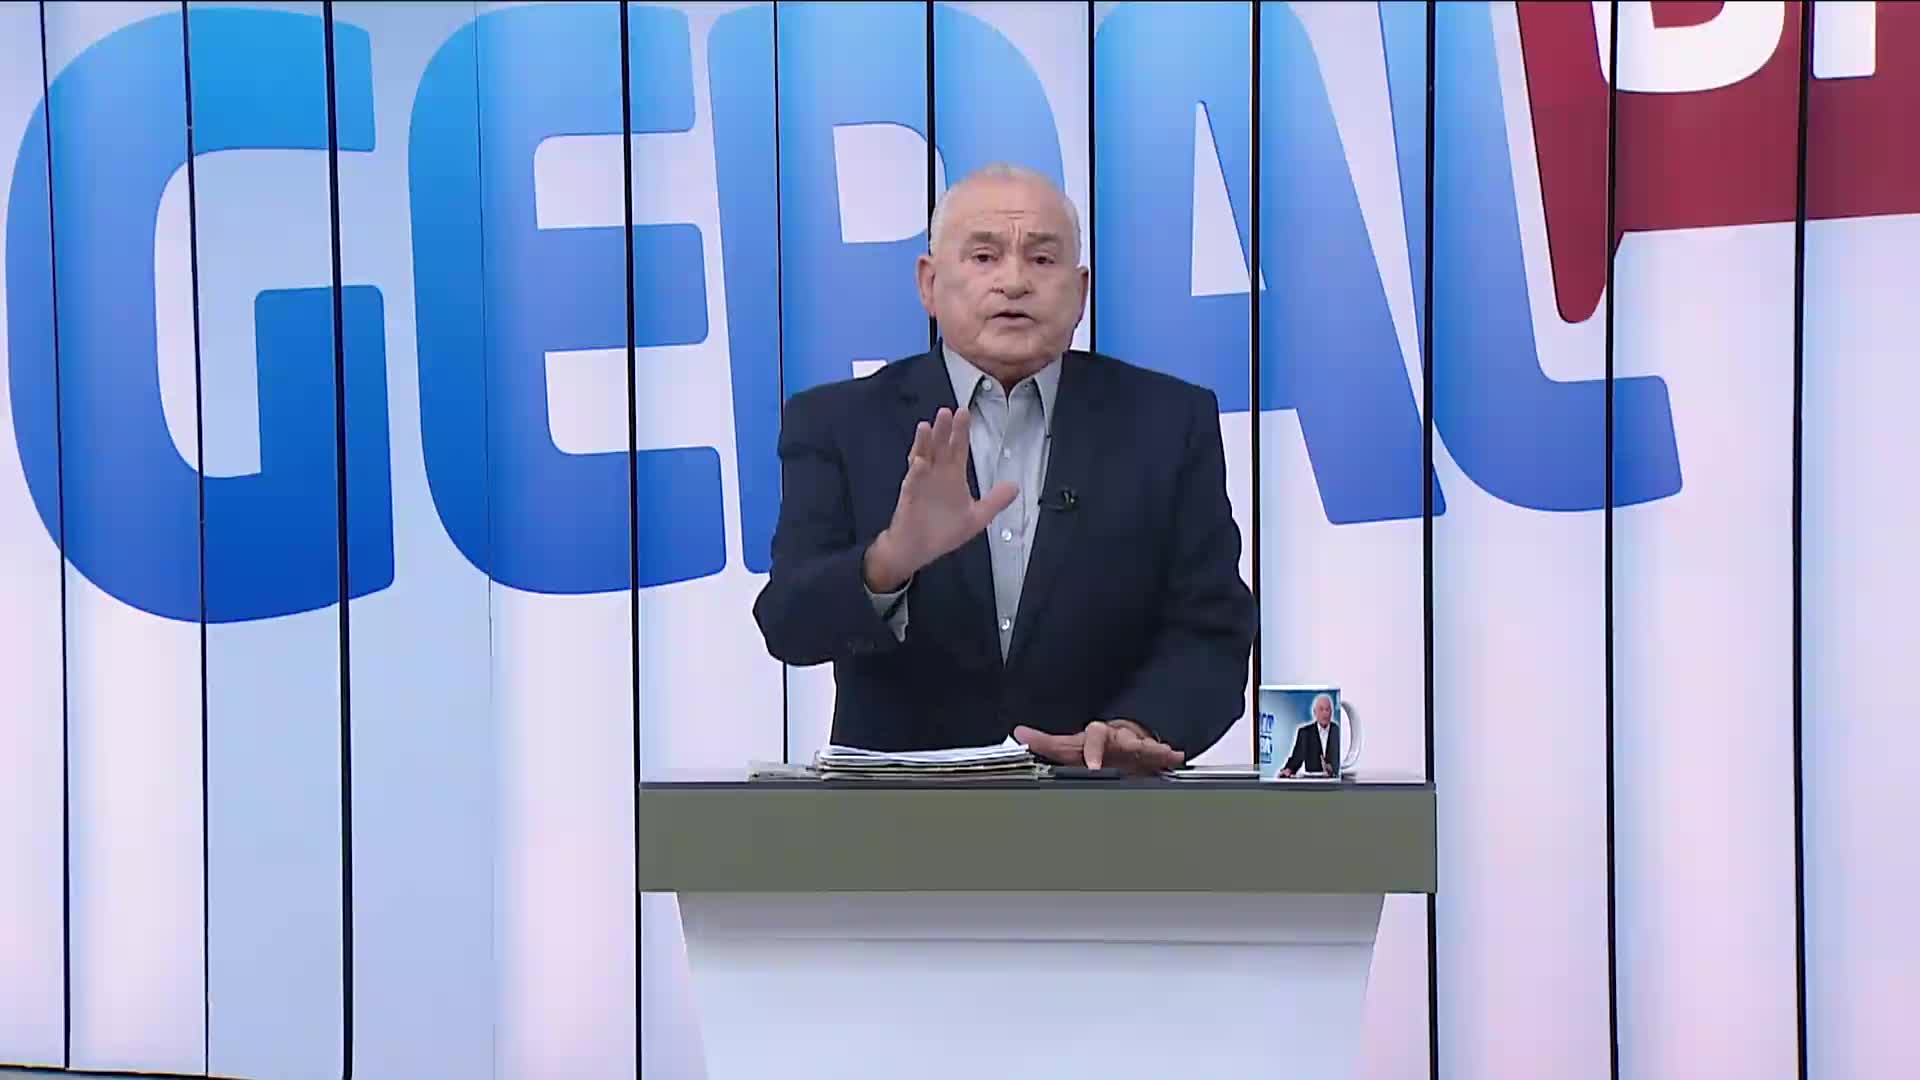 Vídeo: Balanço Geral Bahia: confira a agenda do candidato Haddad